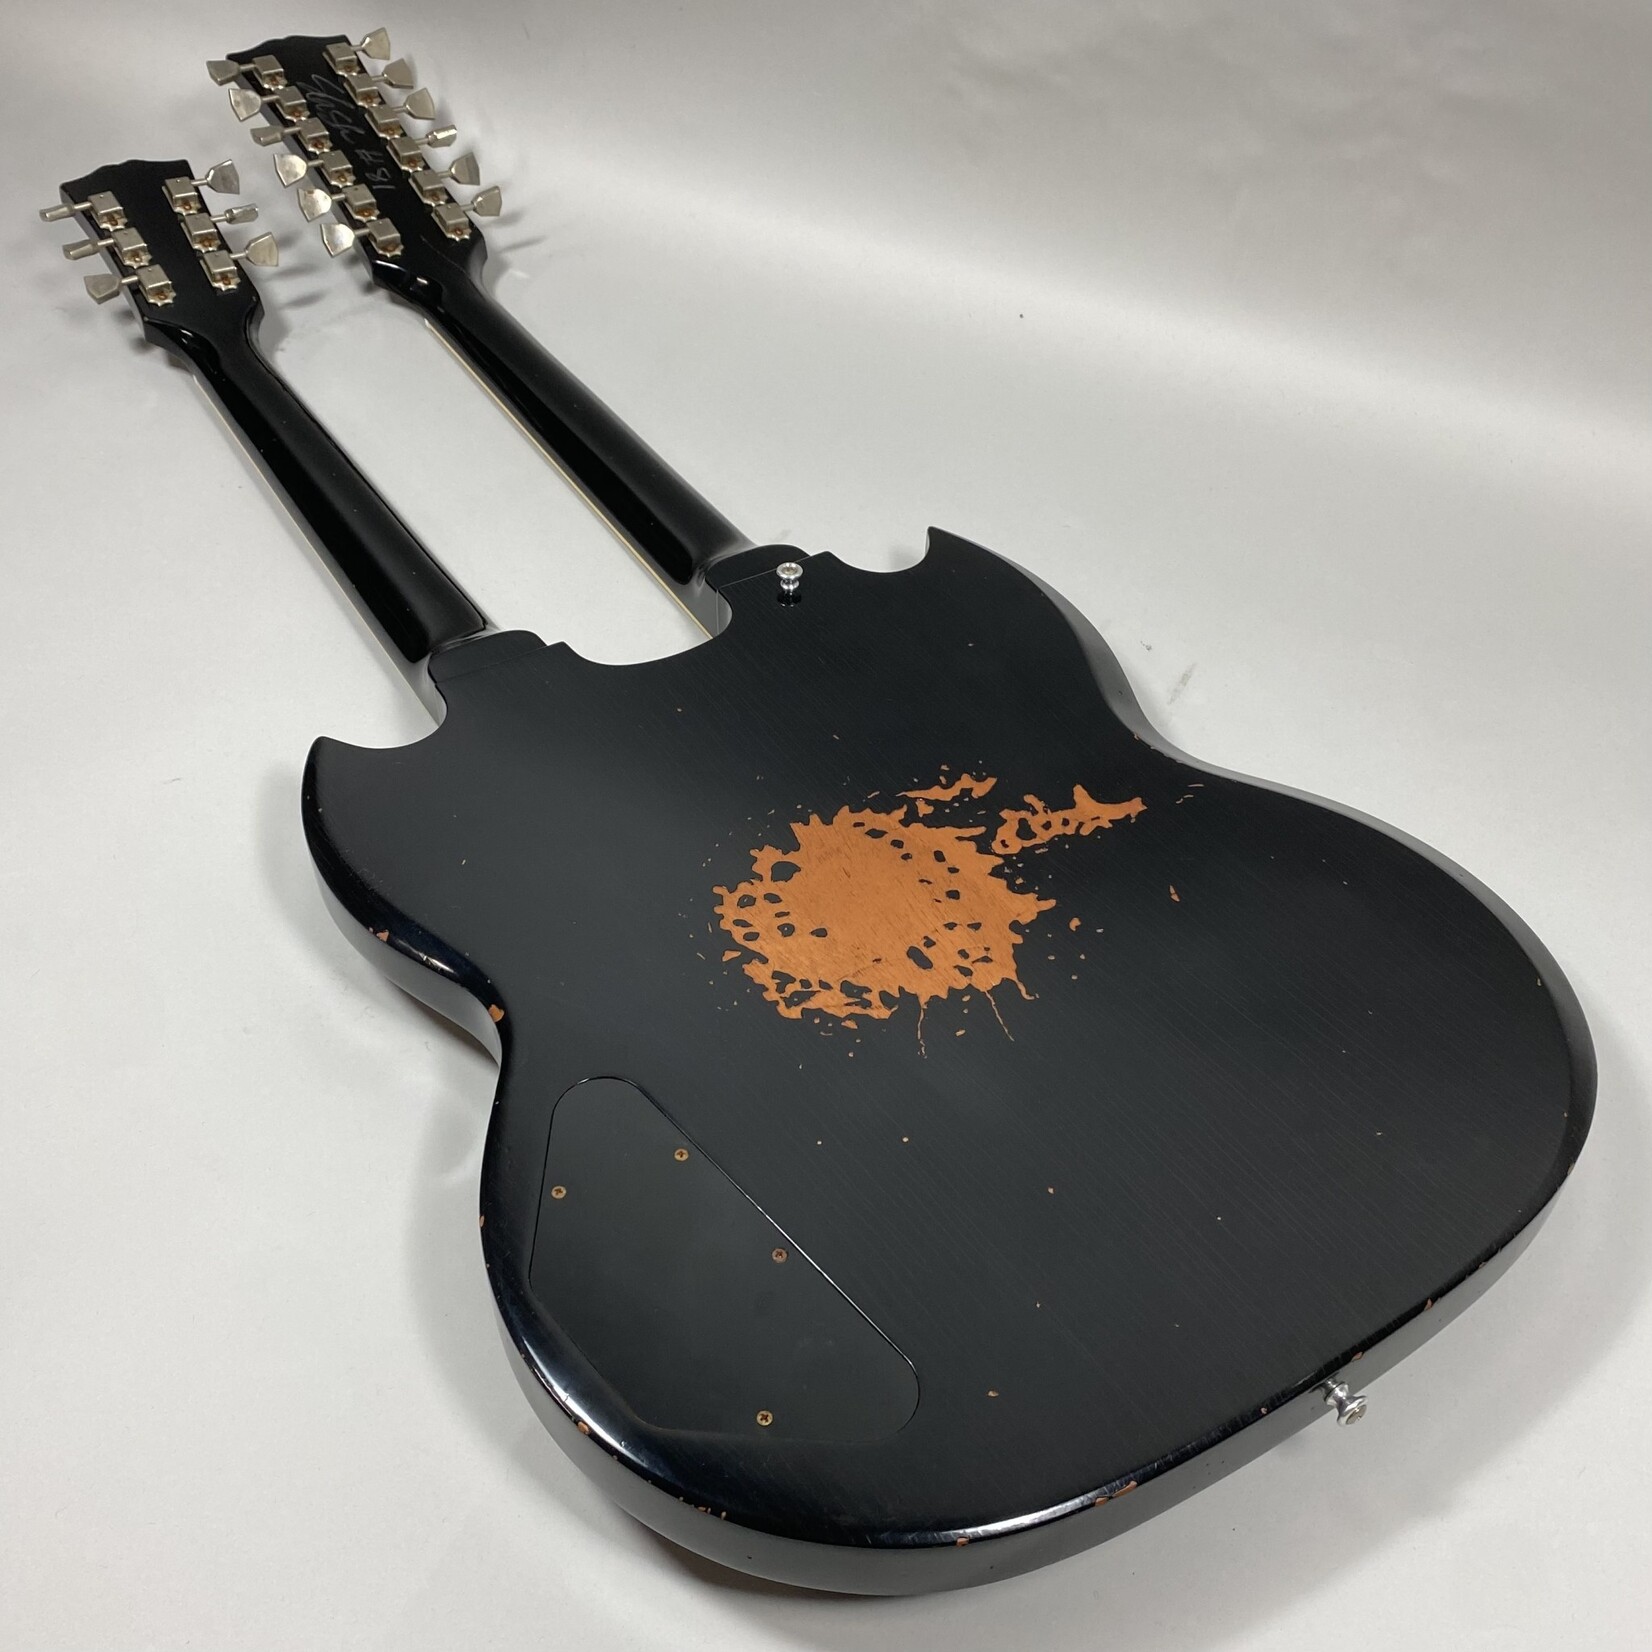 Gibson 2019 Gibson Slash '66 EDS-1275 Aged Signed Doubleneck